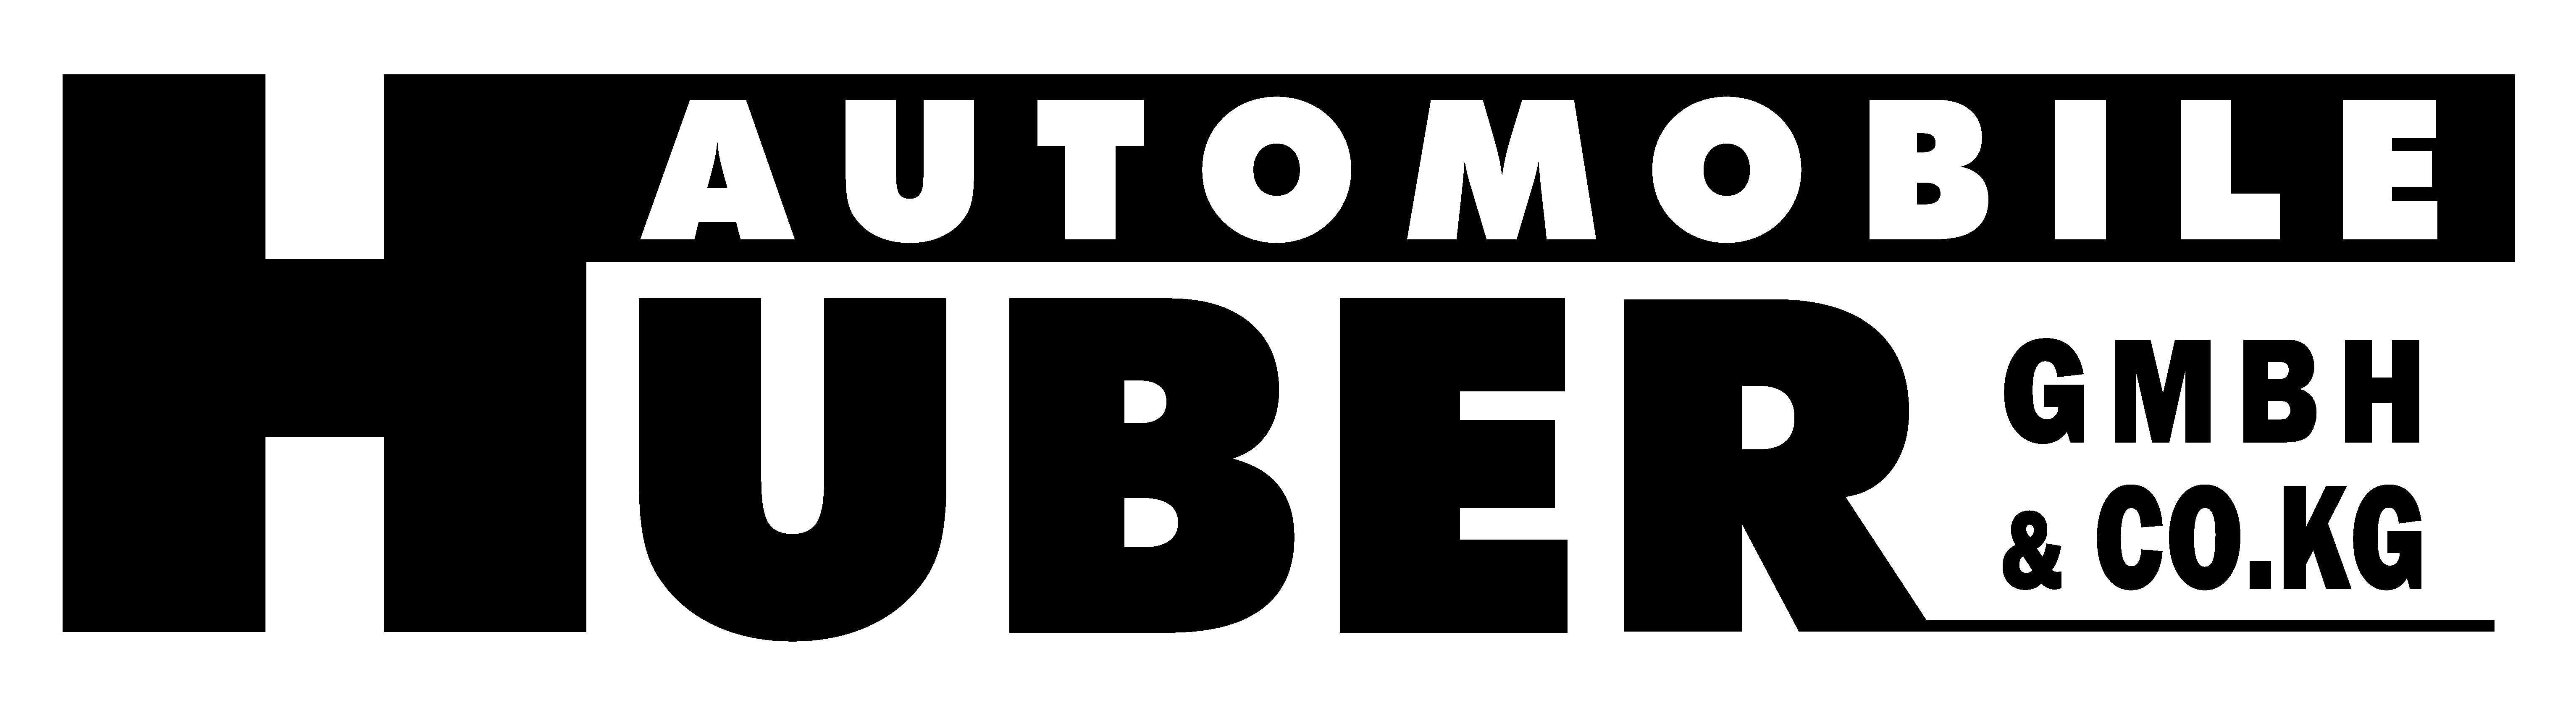 August Huber von Huber Automobile GmbH & Co. KG